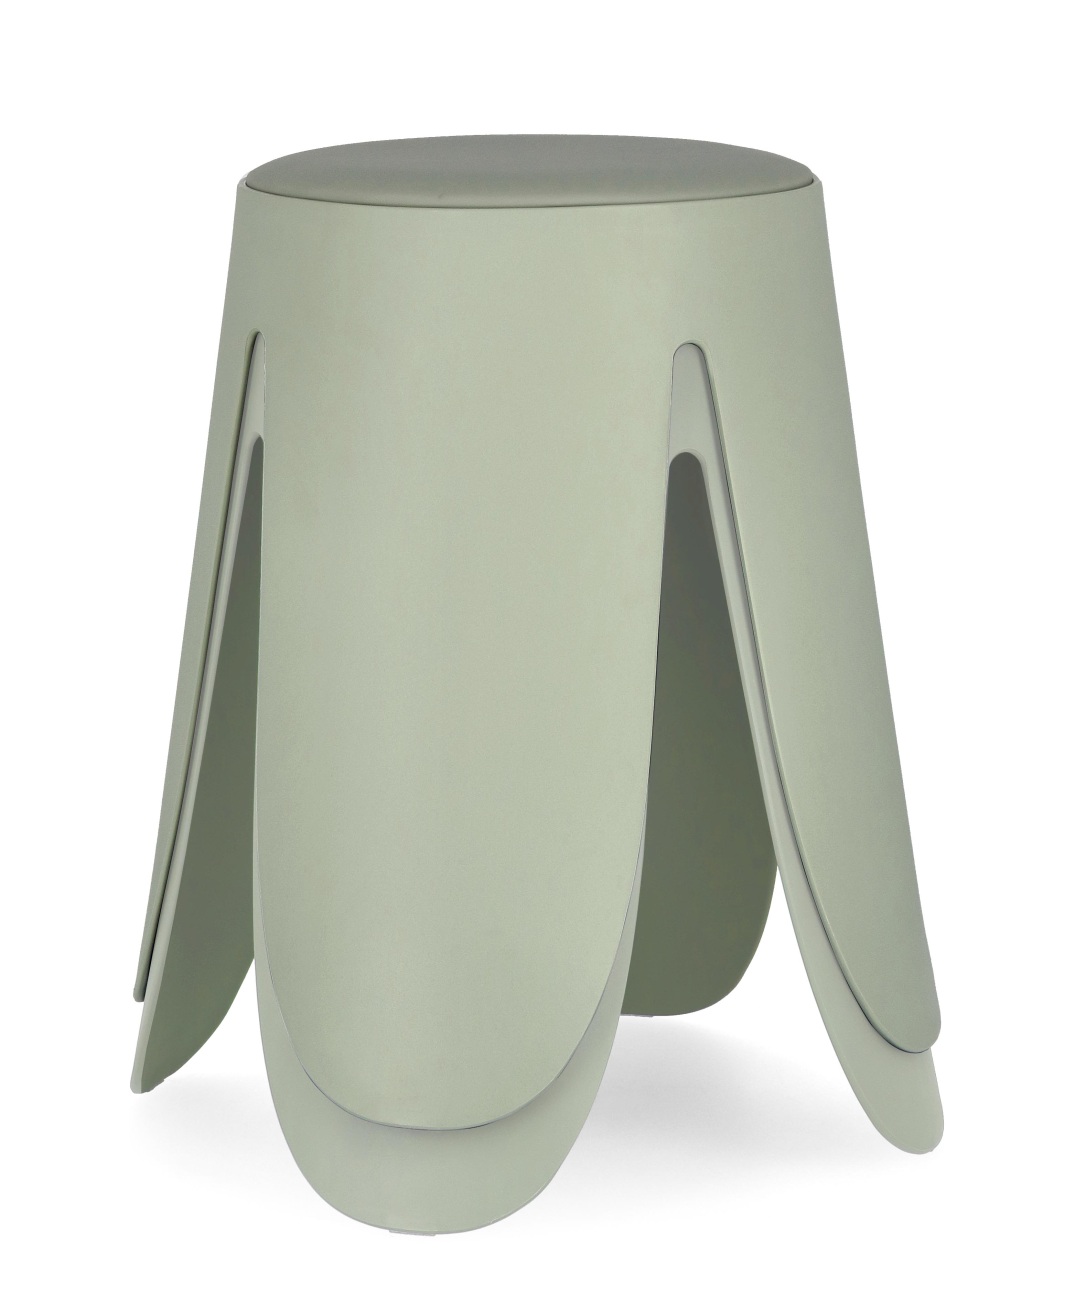 Der Hocker Imogen überzeugt mit seinem modernen Stil. Gefertigt wurde er aus Kunststoff, welcher einen grünen Farbton besitzt. Die Sitzfläche ist aus Kunstleder und hat eine grüne Farbe. Der Hocker besitzt einen Durchmesser von 37 cm.